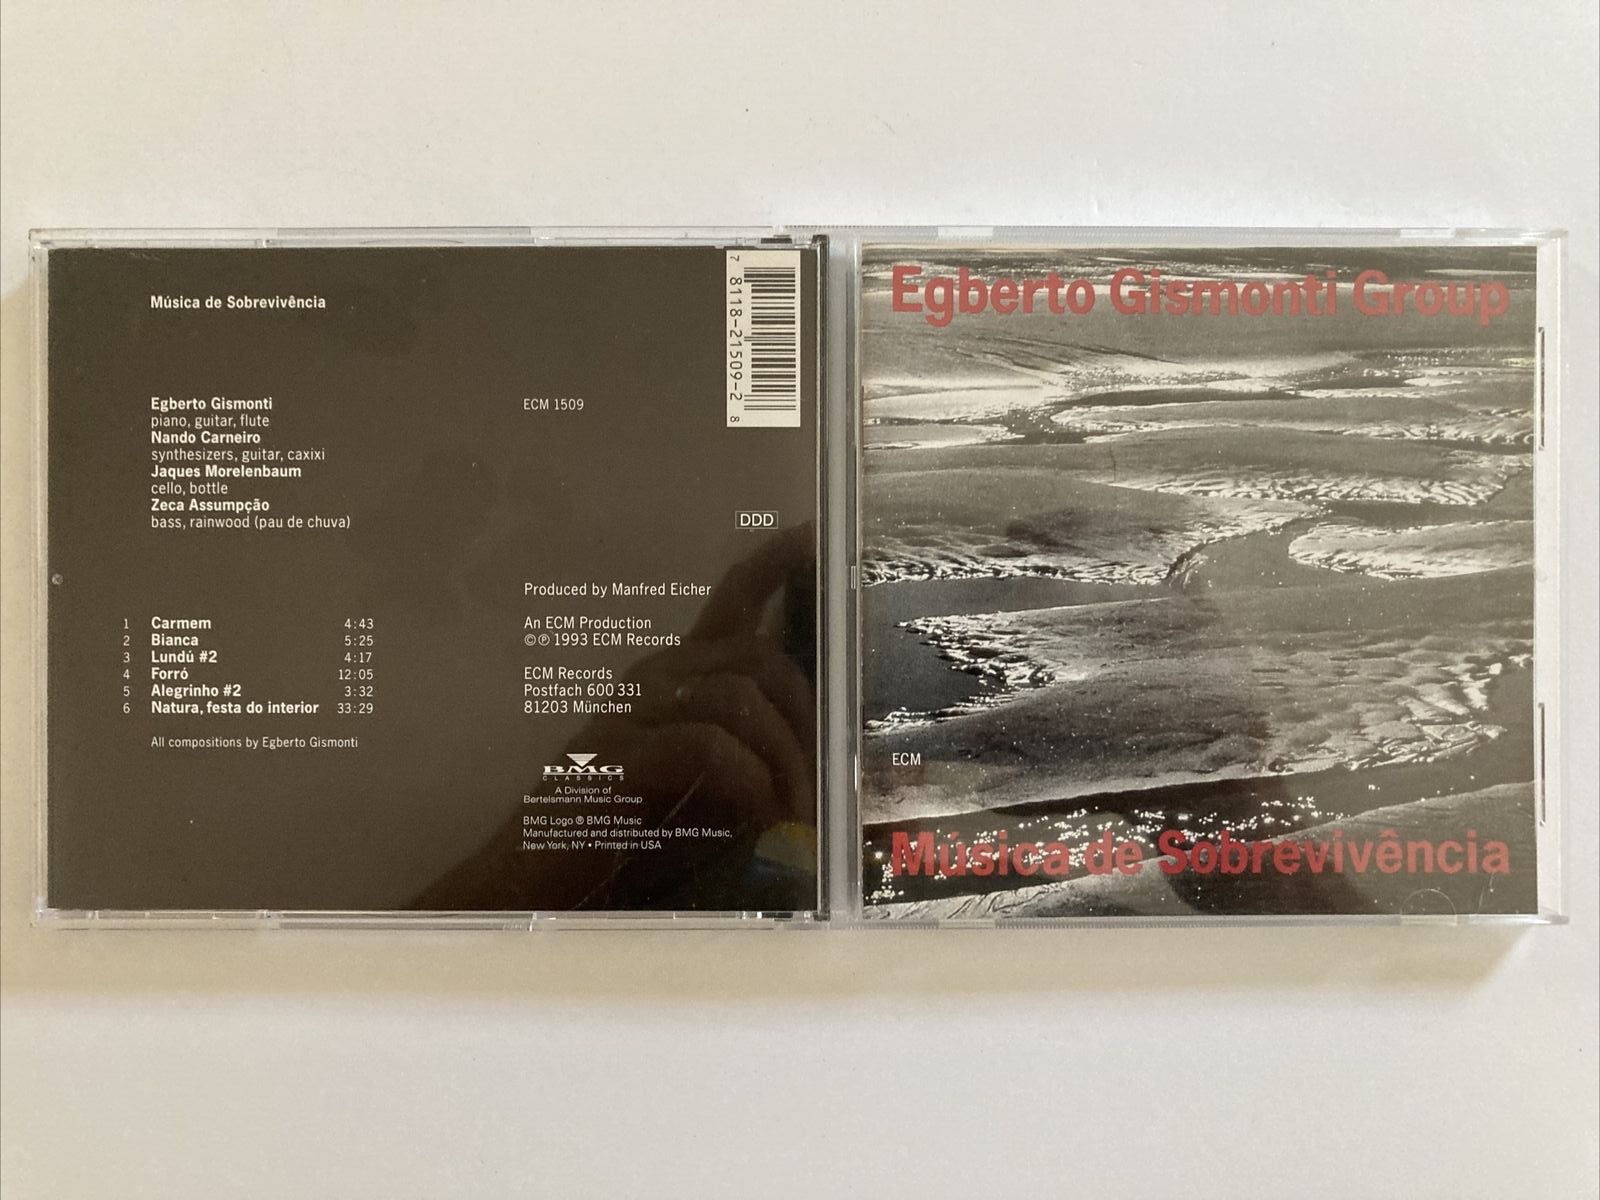 Musica de Sobrevivencia - Egberto Gismonti Group CD - Very Good Condition